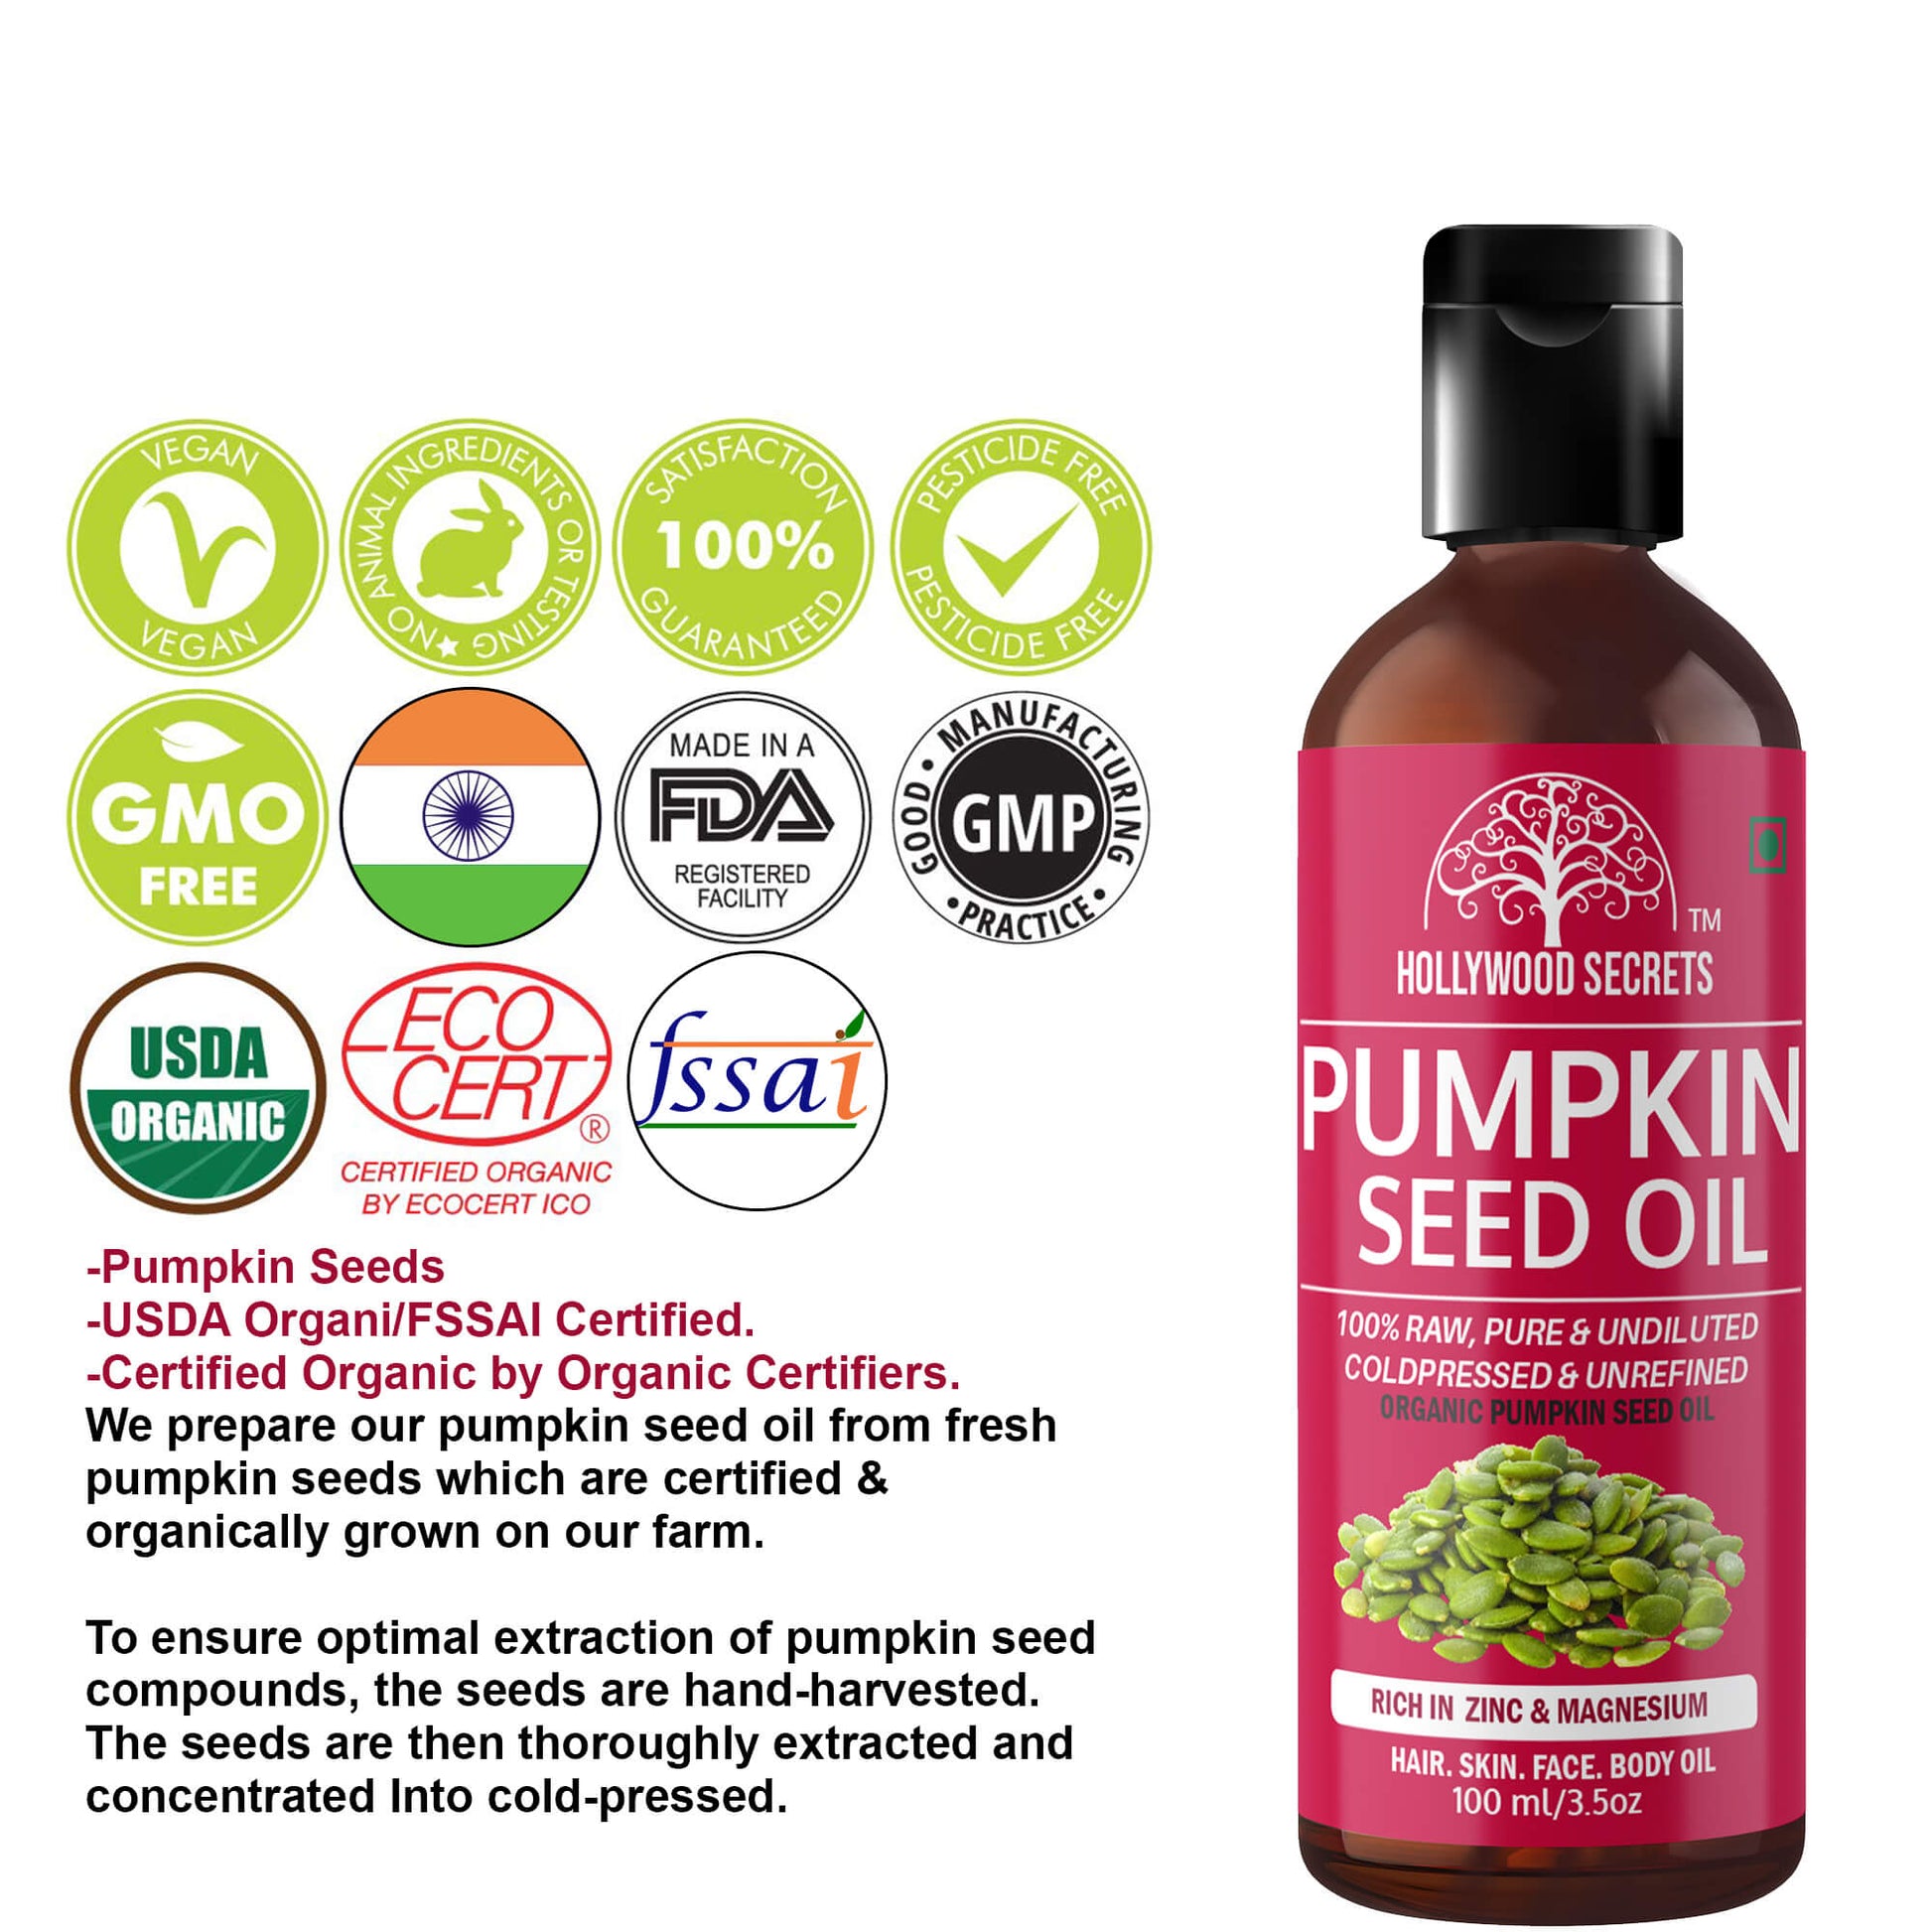 Buy Pumpkin Seed Oil Online at Best in India